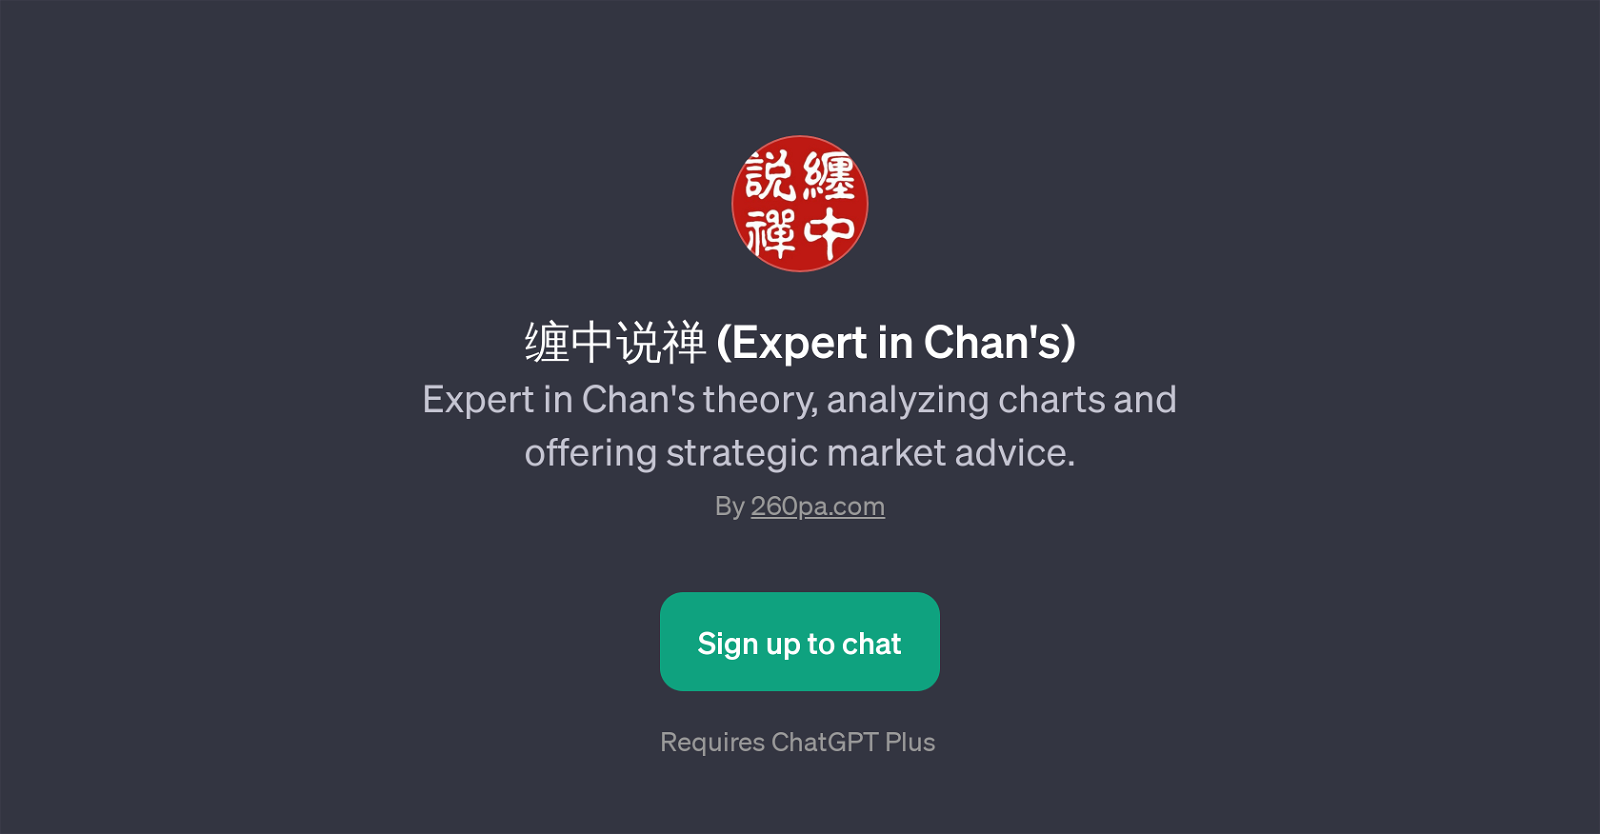 (Expert in Chan's) website